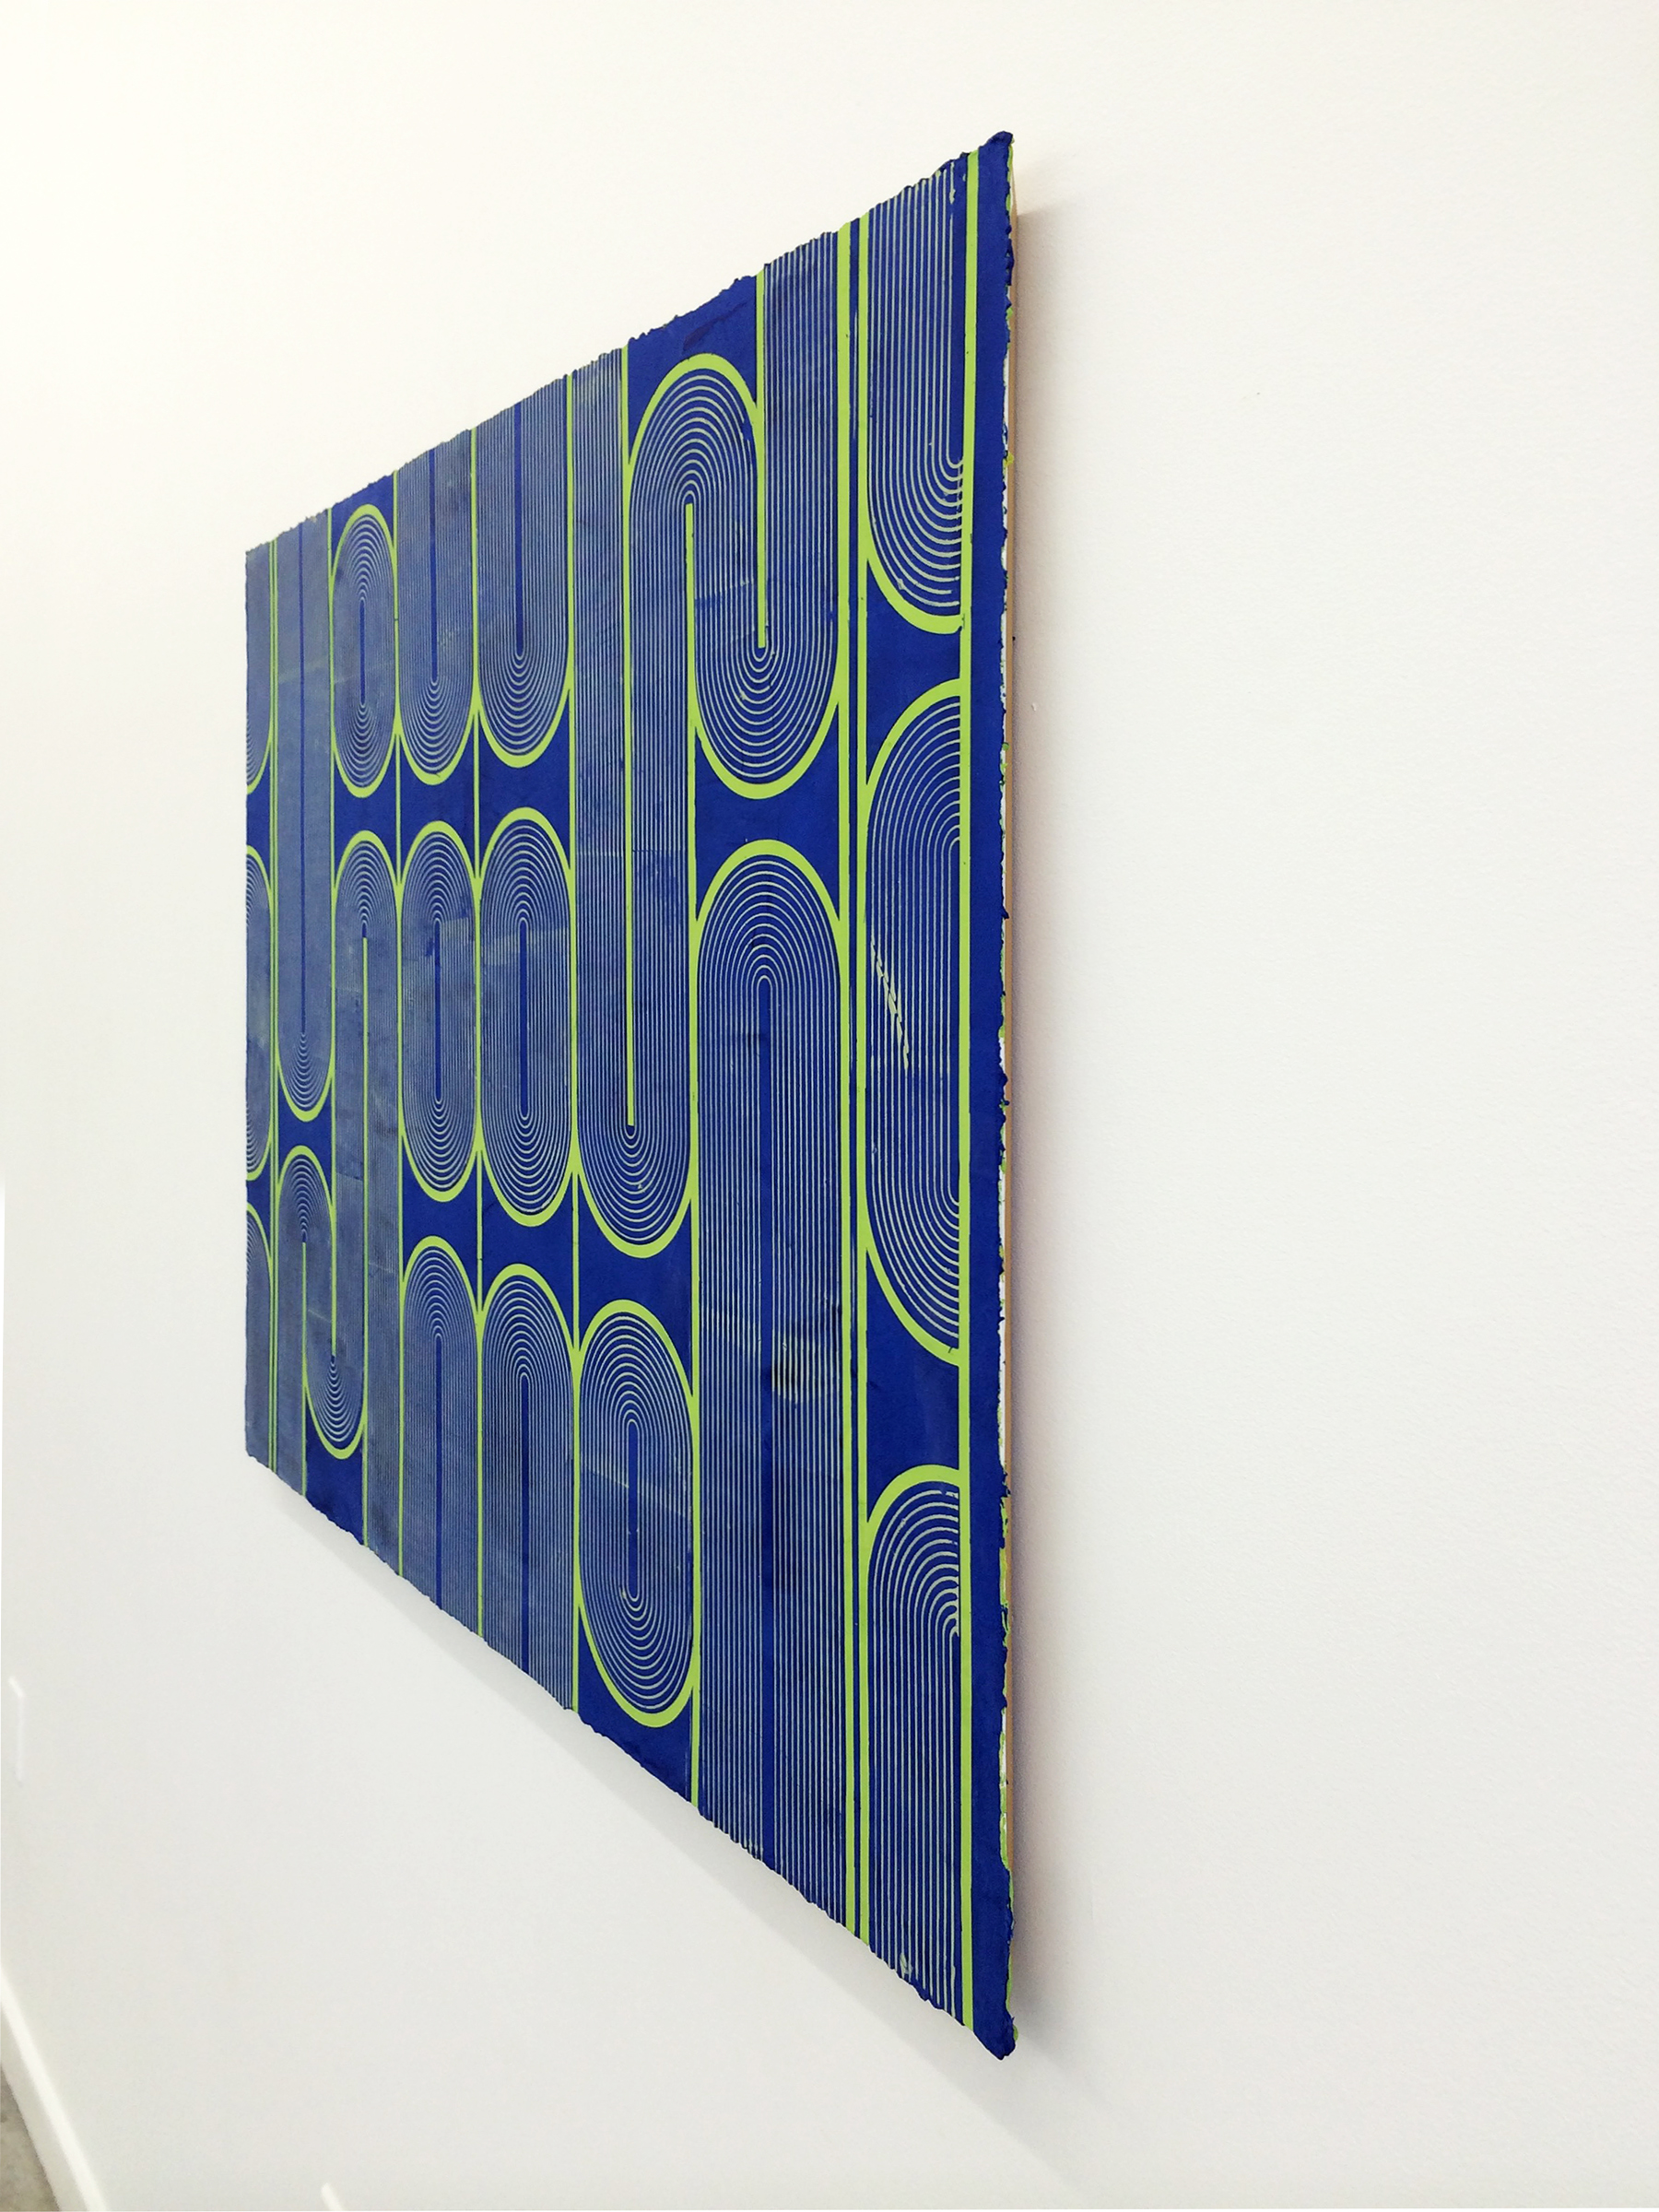   ELISE FERGUSON  (profile) &nbsp;Vinyl Gate , 2016, pigmented plaster on panel, 30" x 40" 